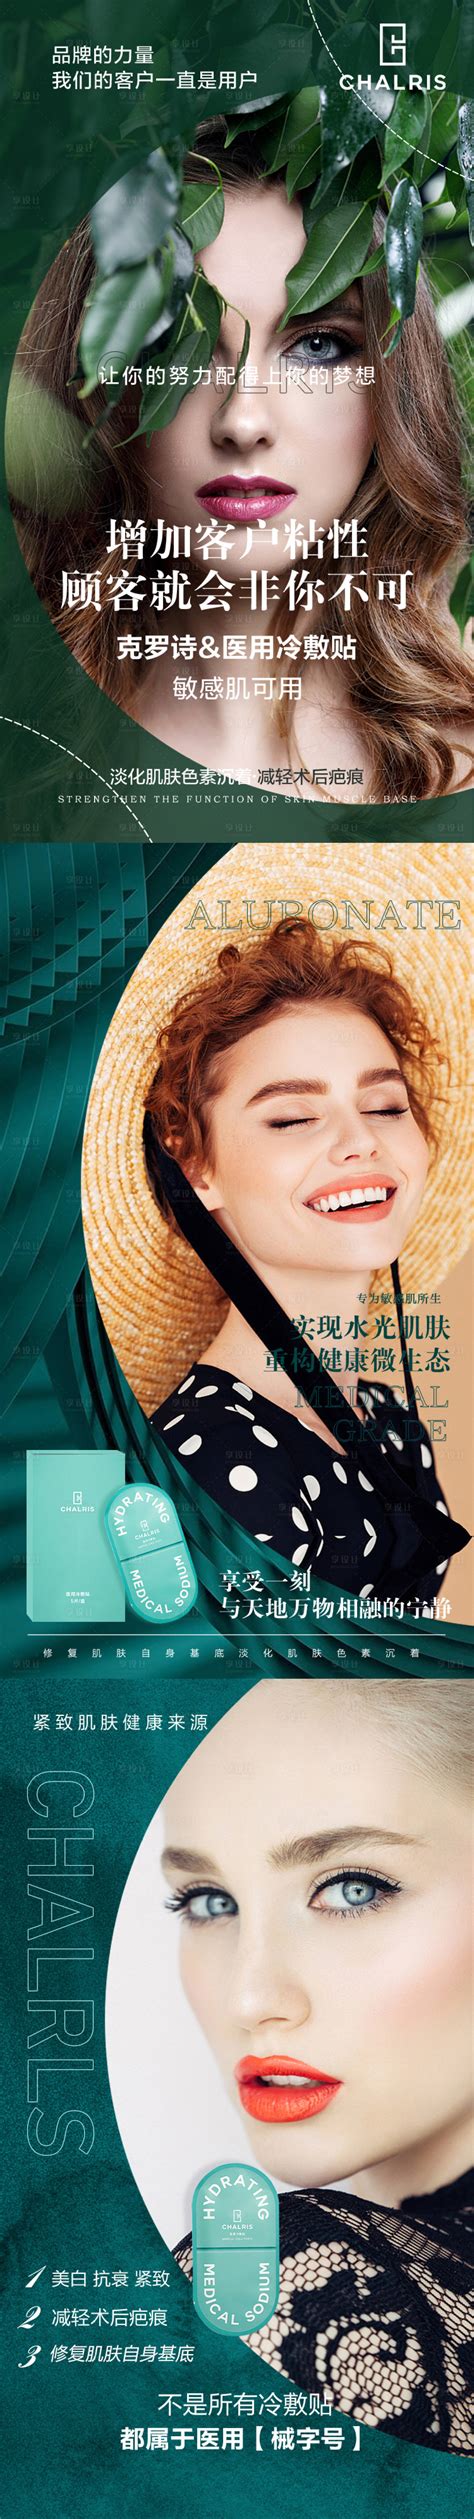 微商化妆品招商加盟系列海报PSD广告设计素材海报模板免费下载-享设计